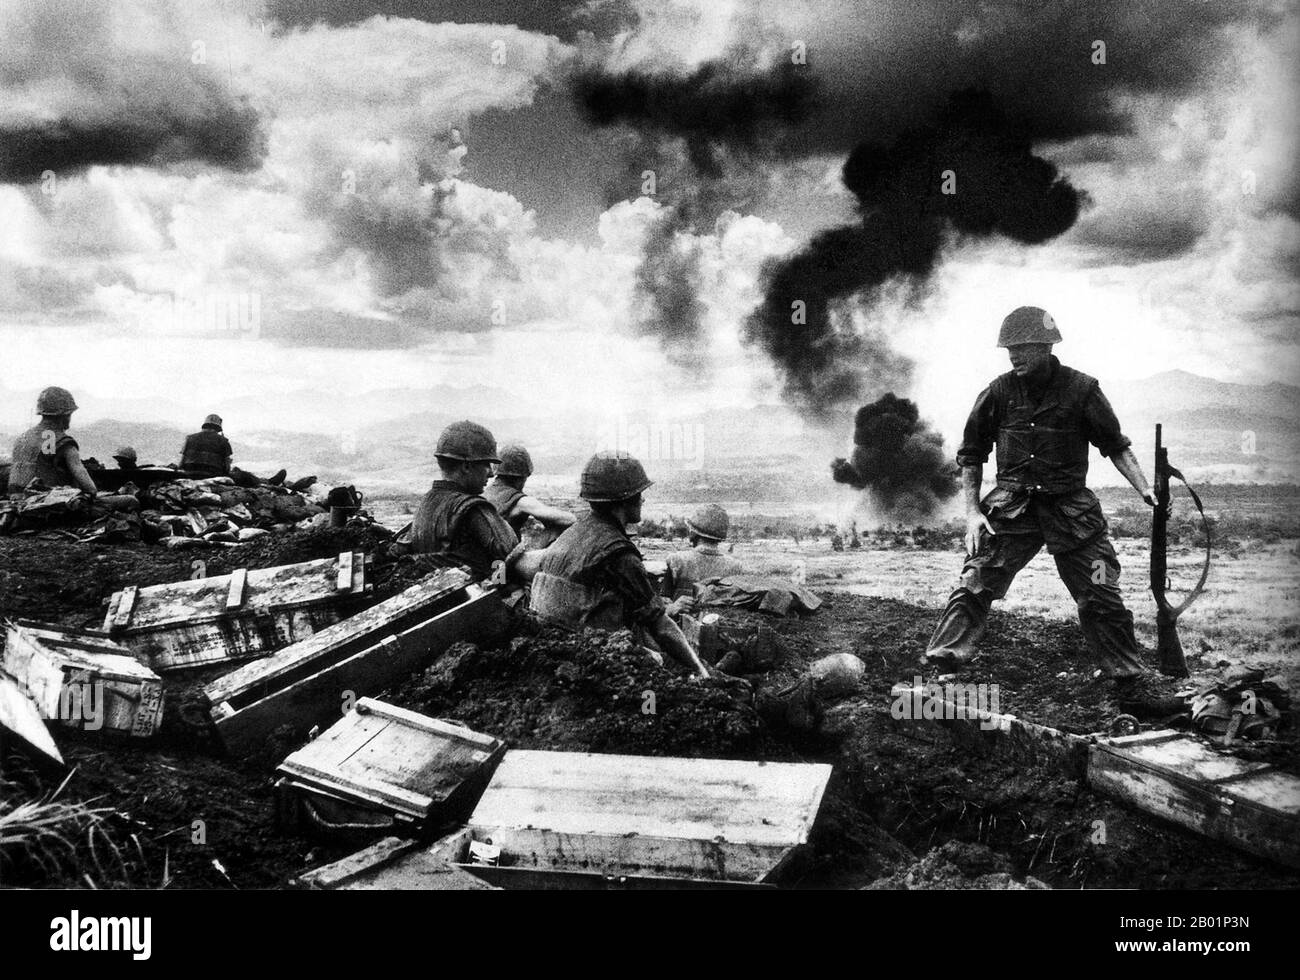 Vietnam : soldats AMÉRICAINS défendant le périmètre de la base con Thien, 1968. Con Thien (vietnamien : Cồn Tiên, signifiant la « colline des anges ») était une base militaire qui a commencé comme un camp des forces spéciales de l'armée américaine avant de passer à une base de combat du corps des Marines des États-Unis. Il était situé près de la zone démilitarisée vietnamienne (DMZ) à environ 3 kilomètres (1,9 mi) du Nord-Vietnam dans le district de Gio Linh, province de Quảng Trị. Il a été le théâtre de combats acharnés de février 1967 à février 1968. Banque D'Images